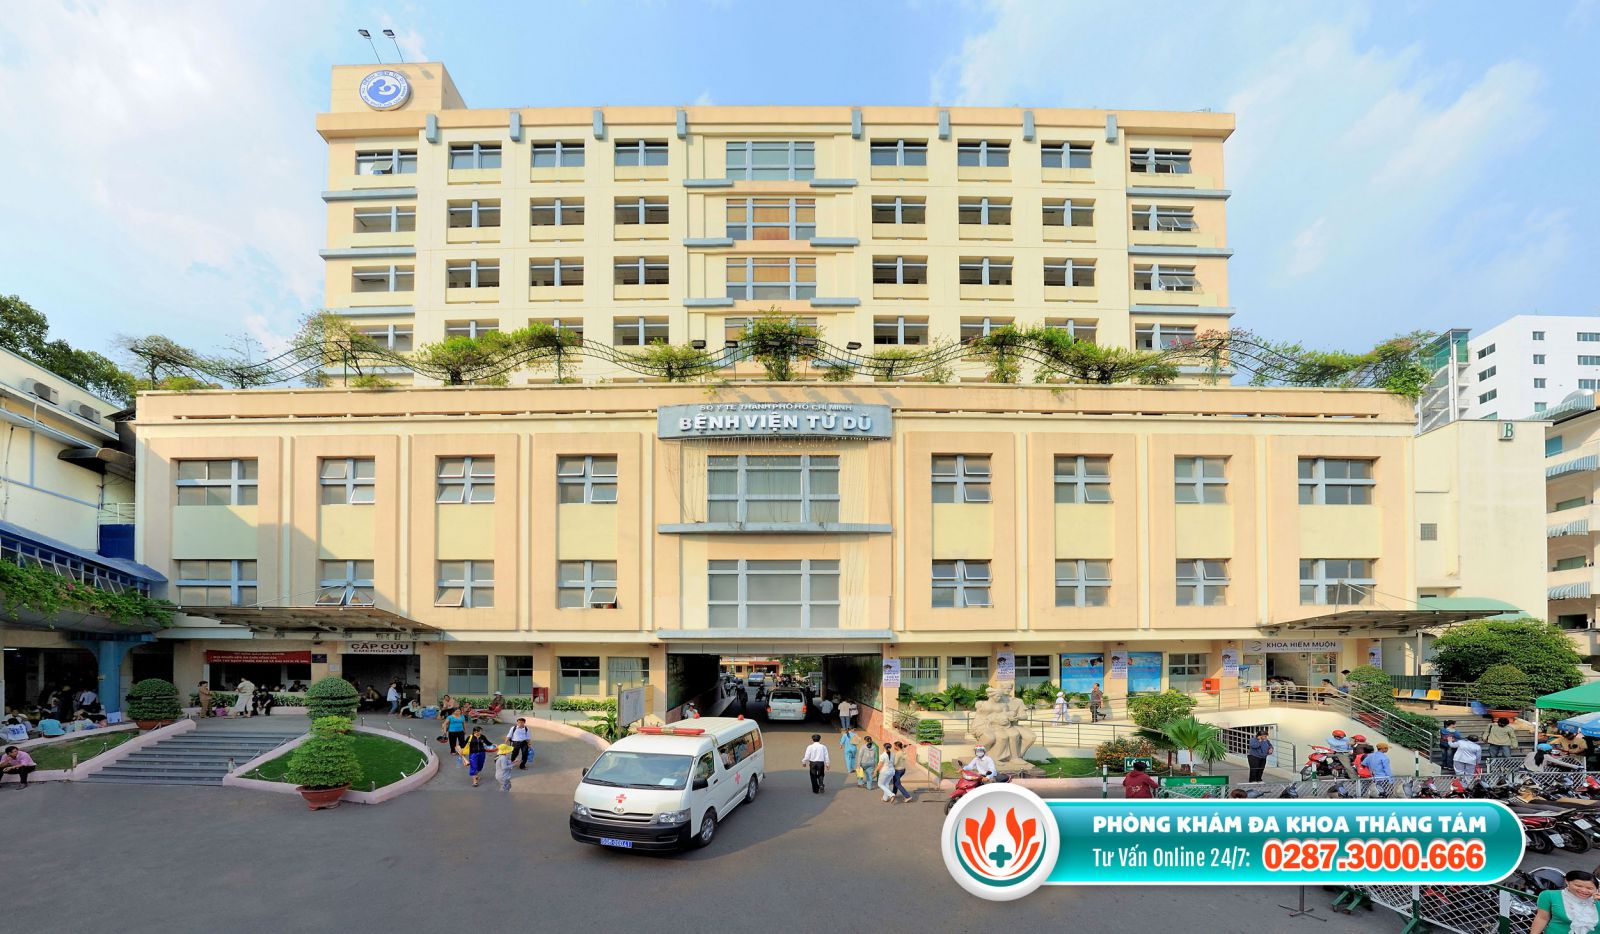 Bệnh viện Từ Dũ là nơi phá thai an toàn tại TPHCM